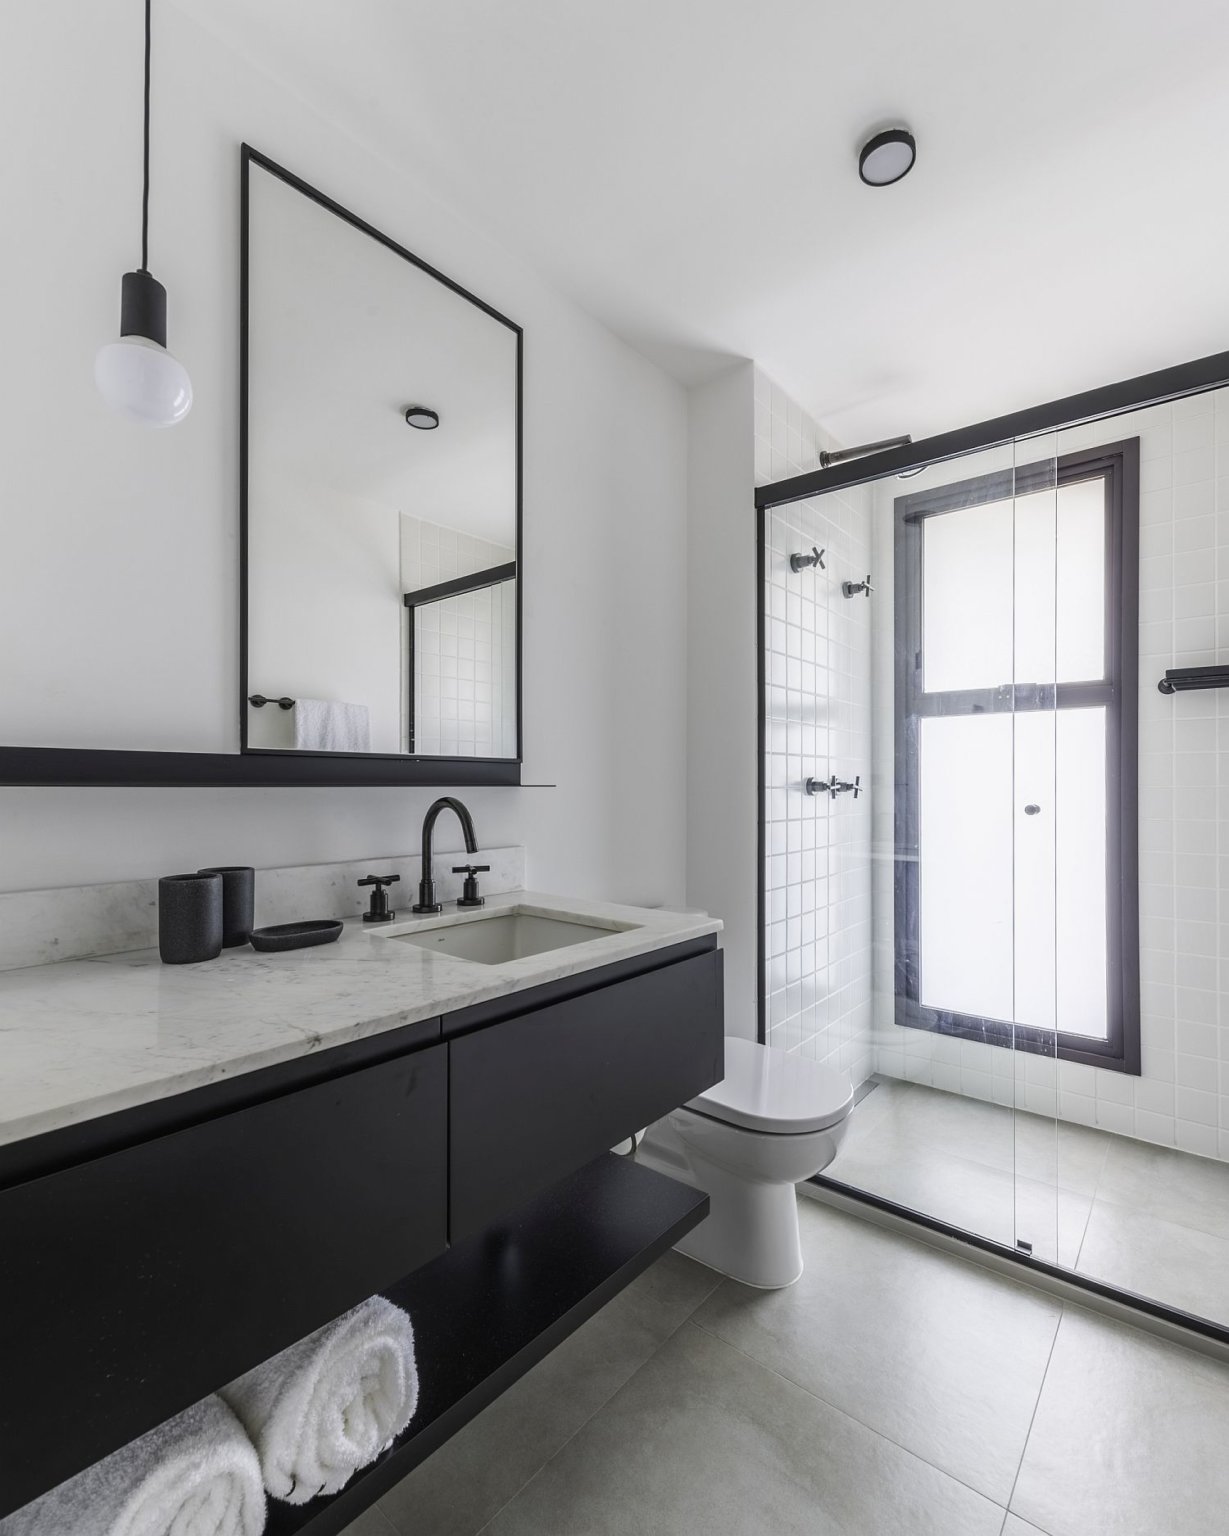 Hình ảnh phòng tắm tông màu đen - trắng với vách kính trong suốt trong căn hộ phong cách đương đại